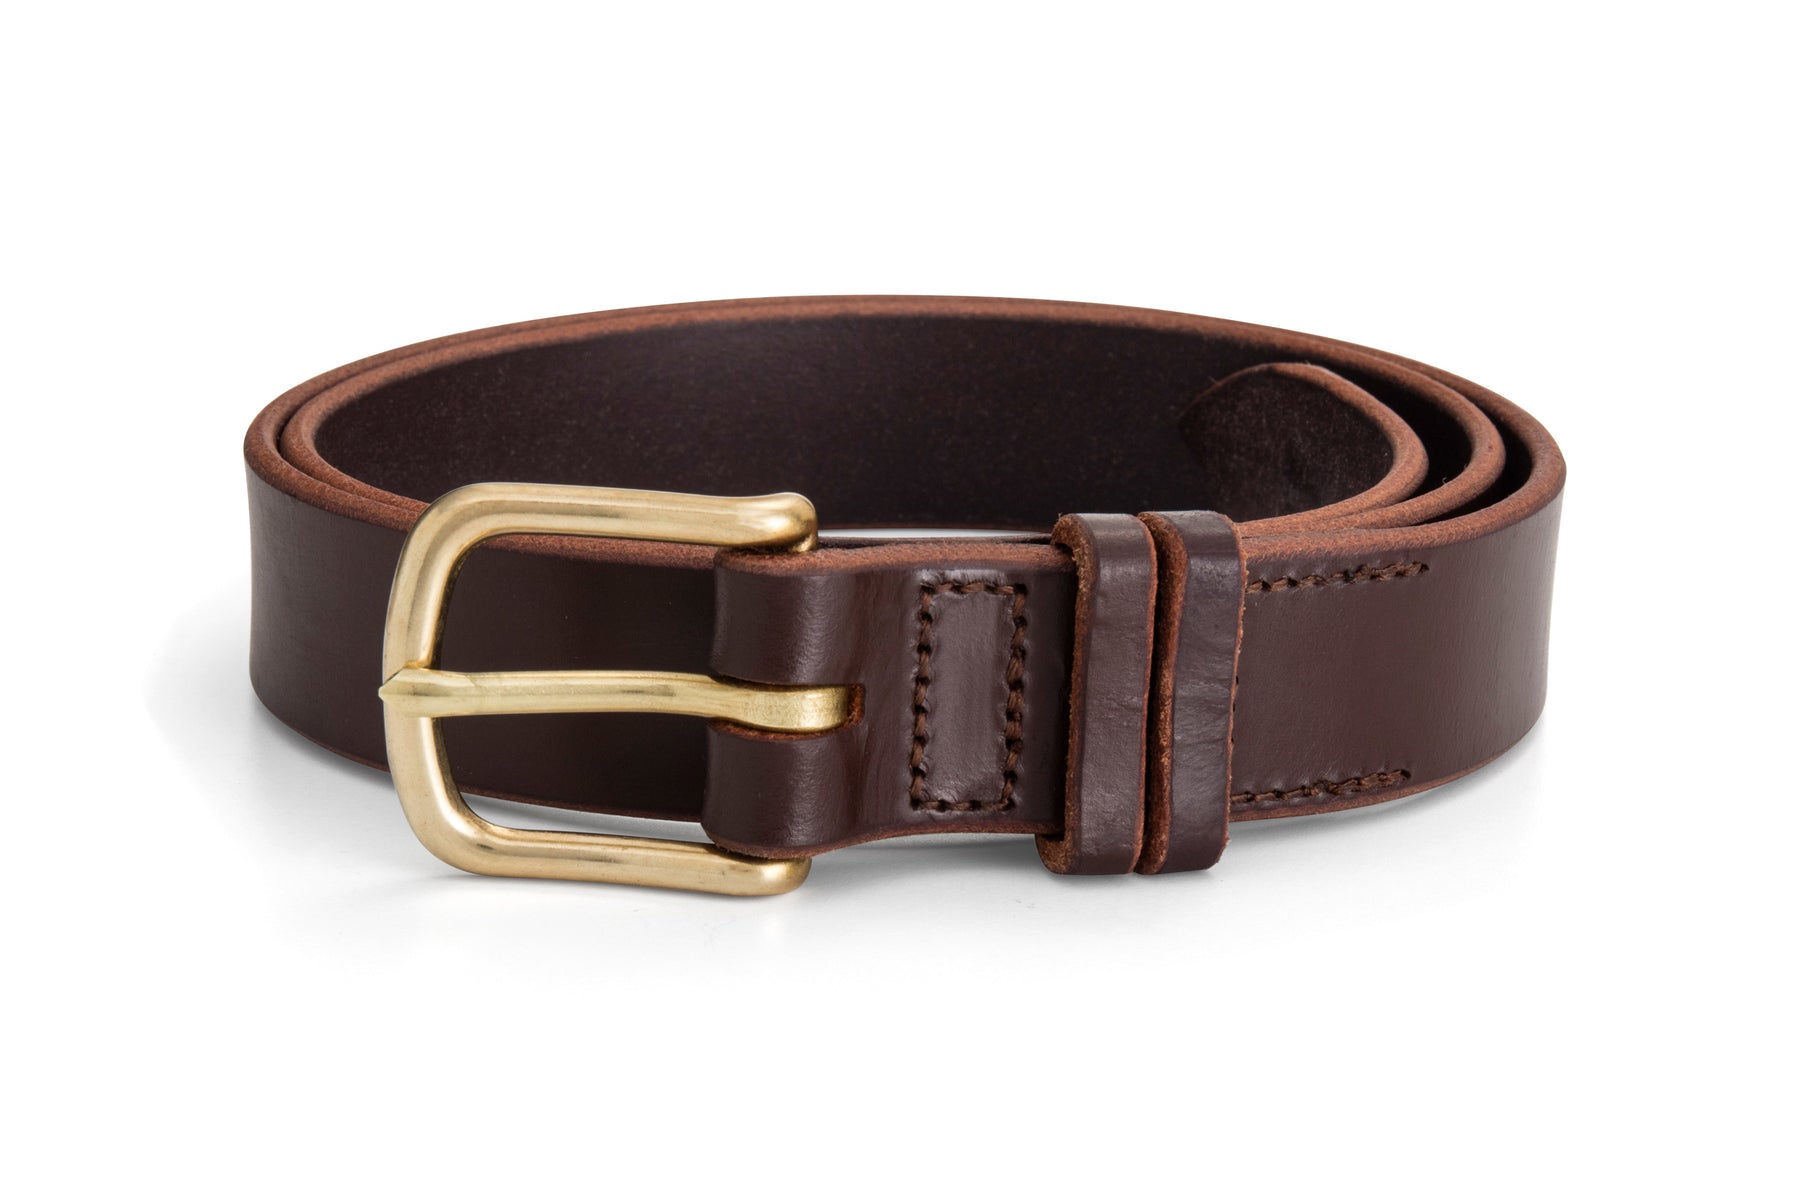 Leather Belts for Men & Women | Australian Made - Angus Barrett Saddlery